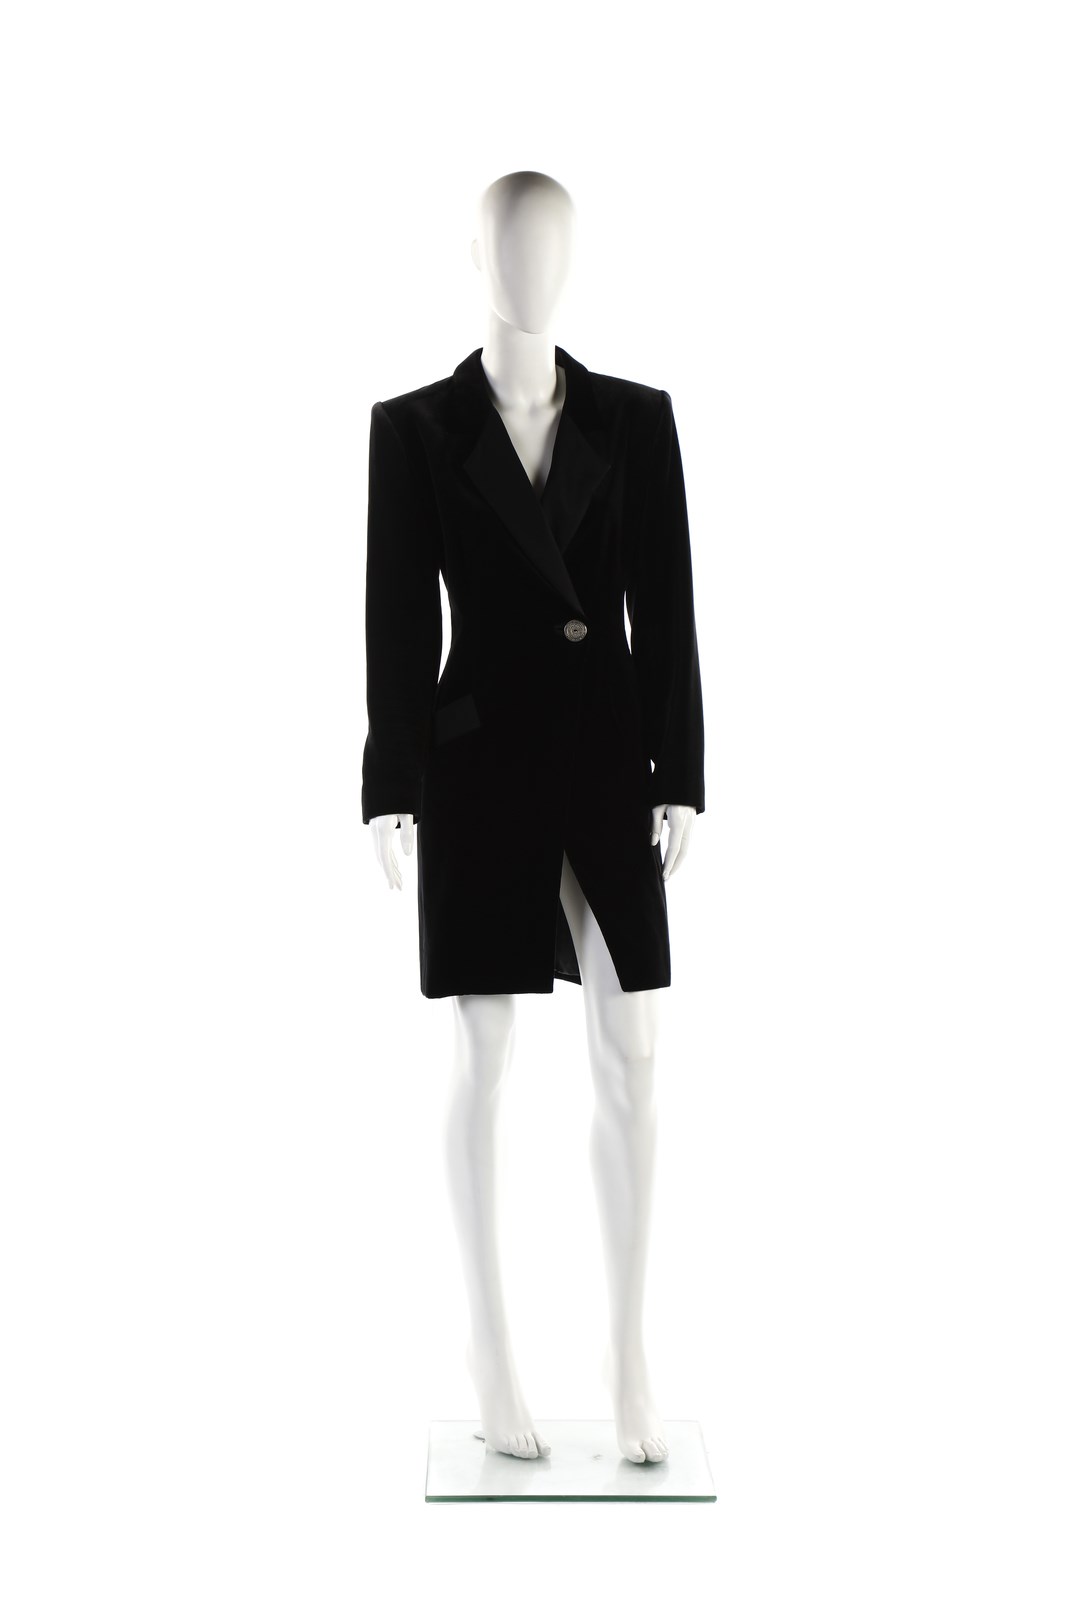 Overcoat dress in black silk velvet. (Yves Saint Laurent)